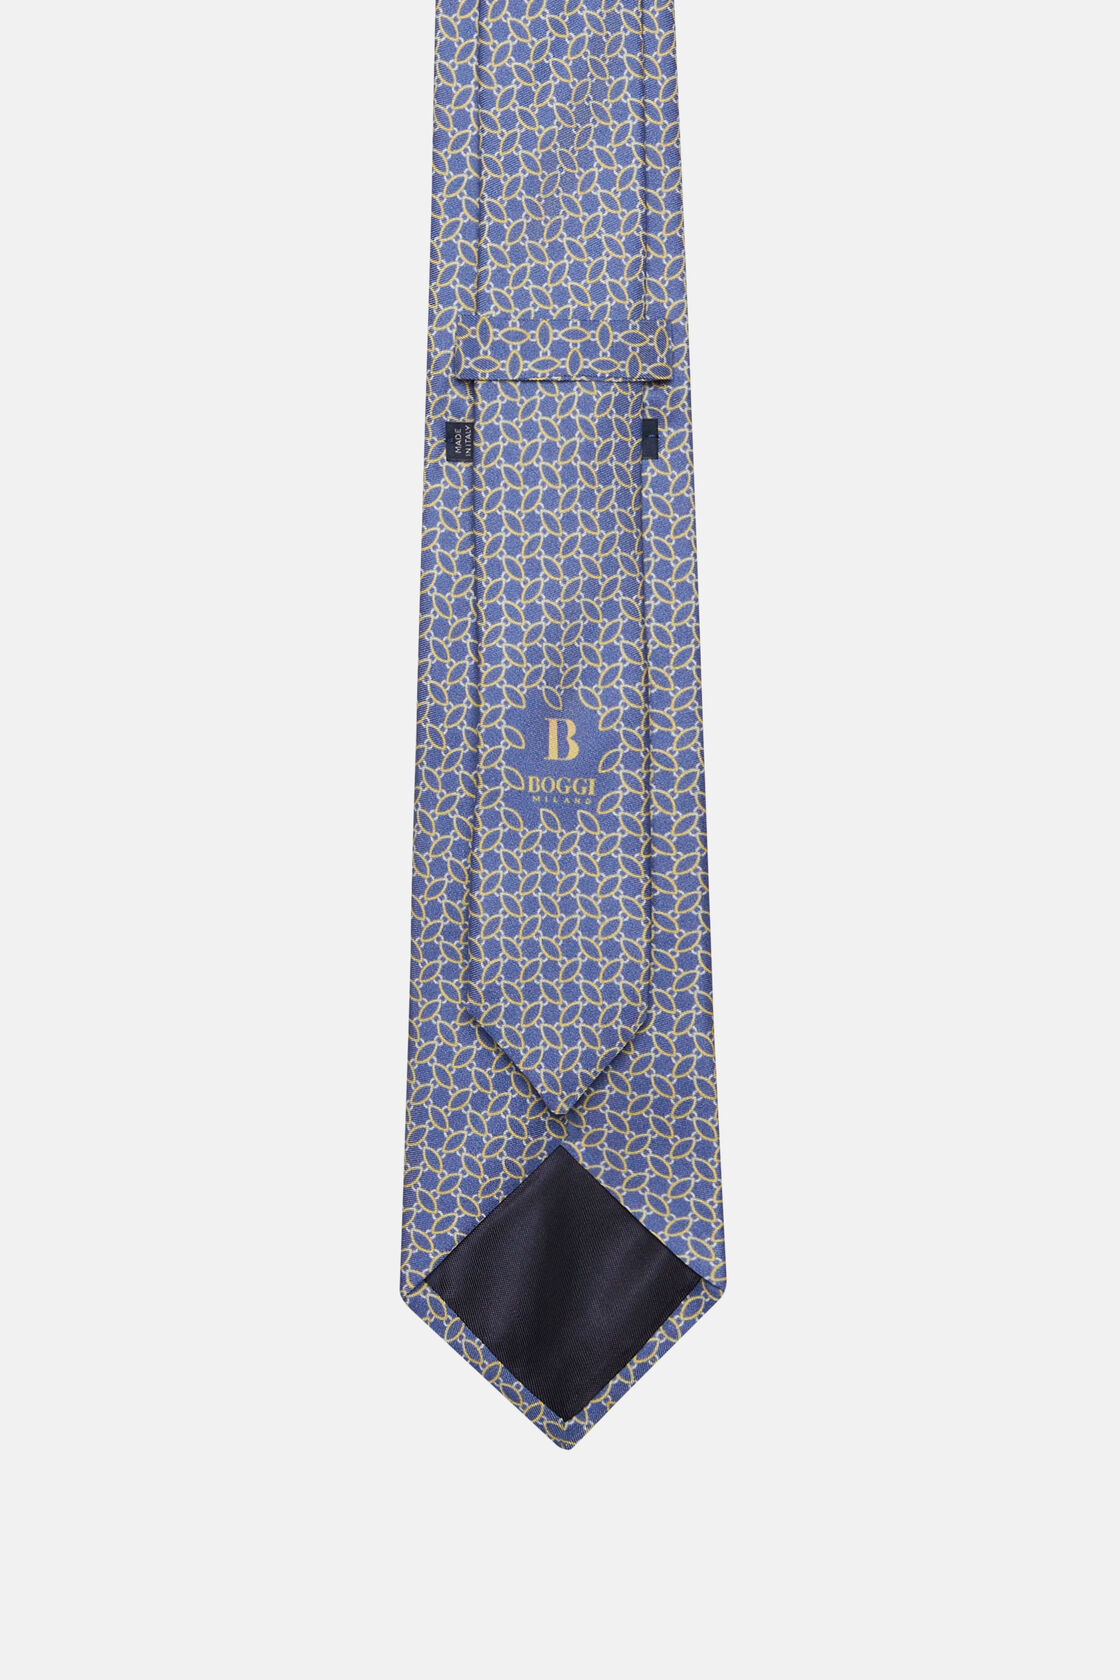 Μεταξωτή γραβάτα με μικρά σχέδια, Blue, hi-res